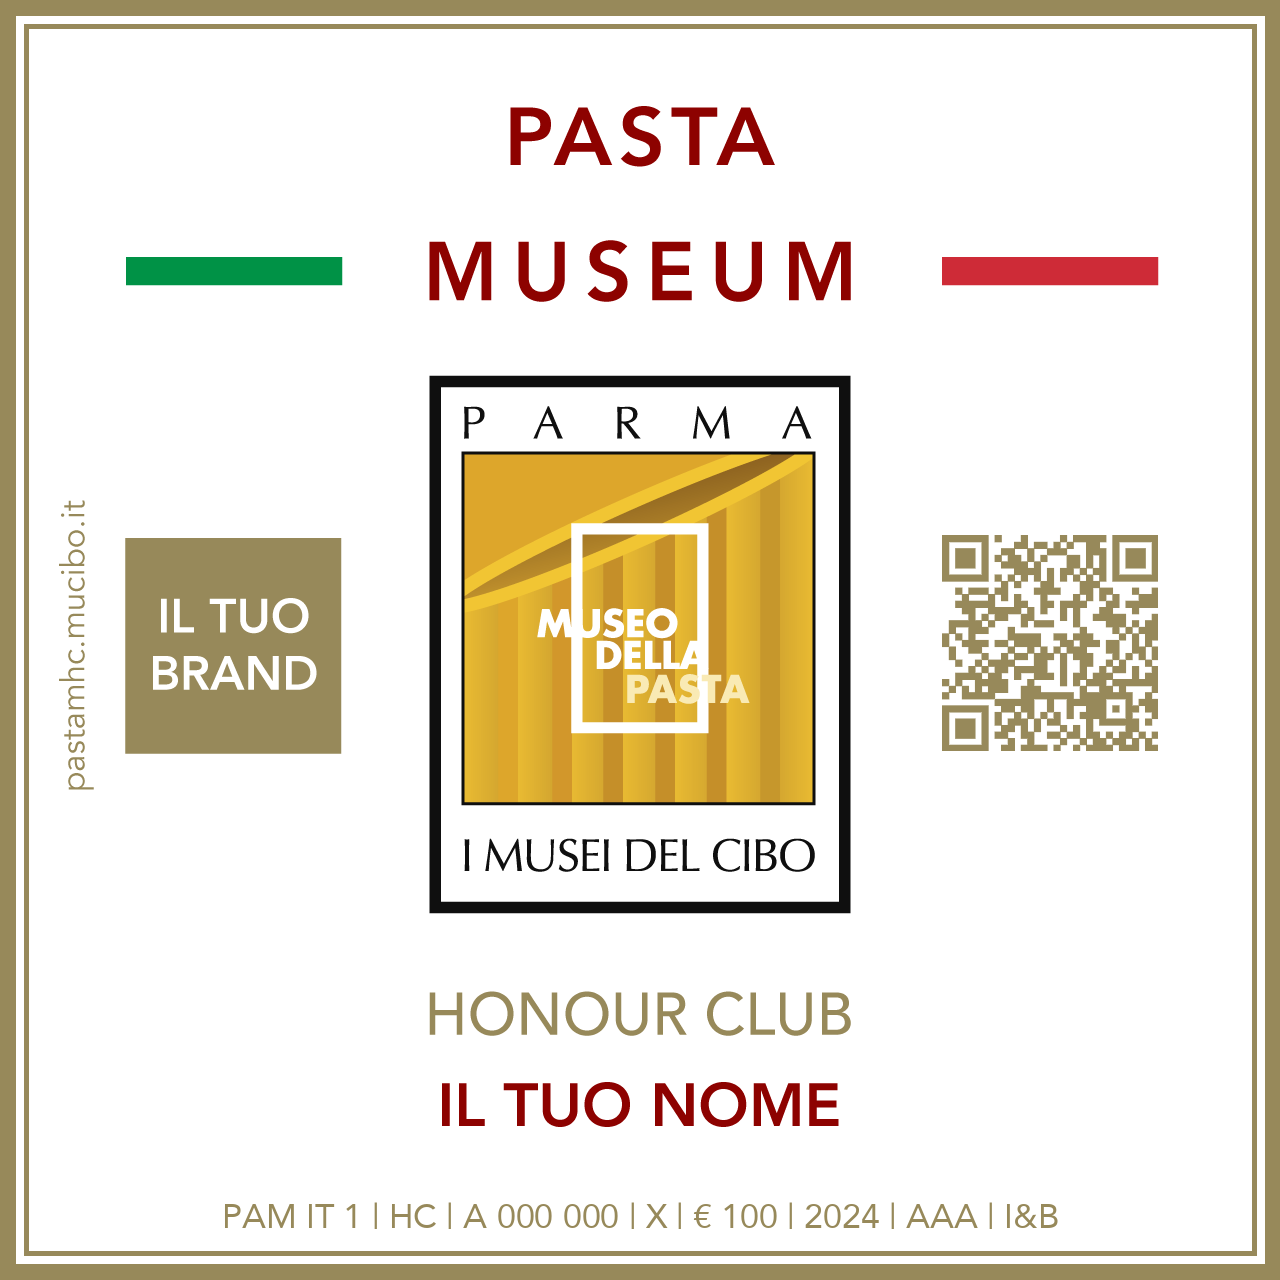 Pasta Museum Honour Club - Token - IL TUO BRAND